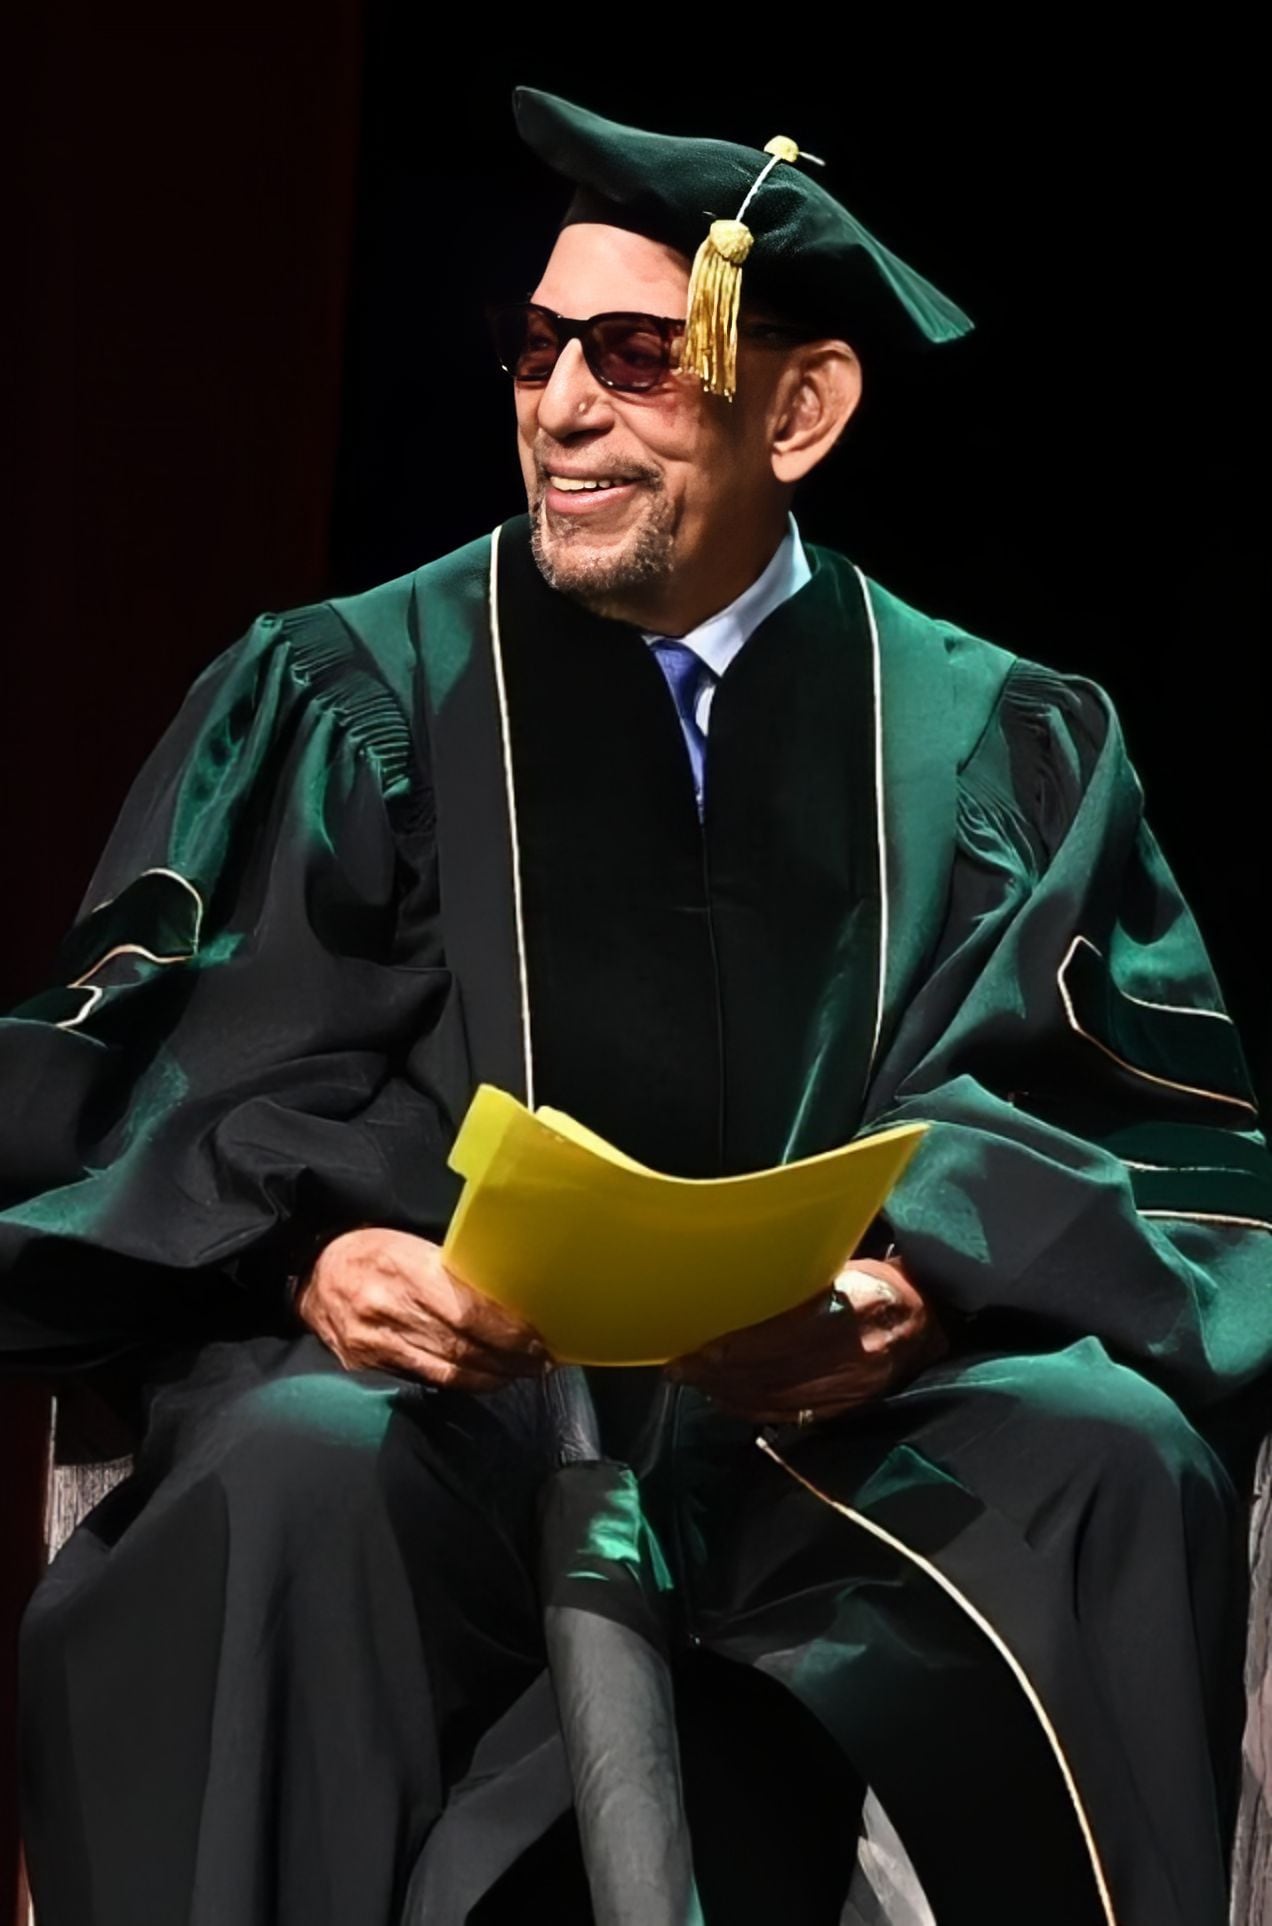 El director de orquesta y percusionista puertorriqueño Willie Rosario recibió el grado de Doctor en Música honoris causa, otorgado por la Universidad Interamericana de Puerto Rico.